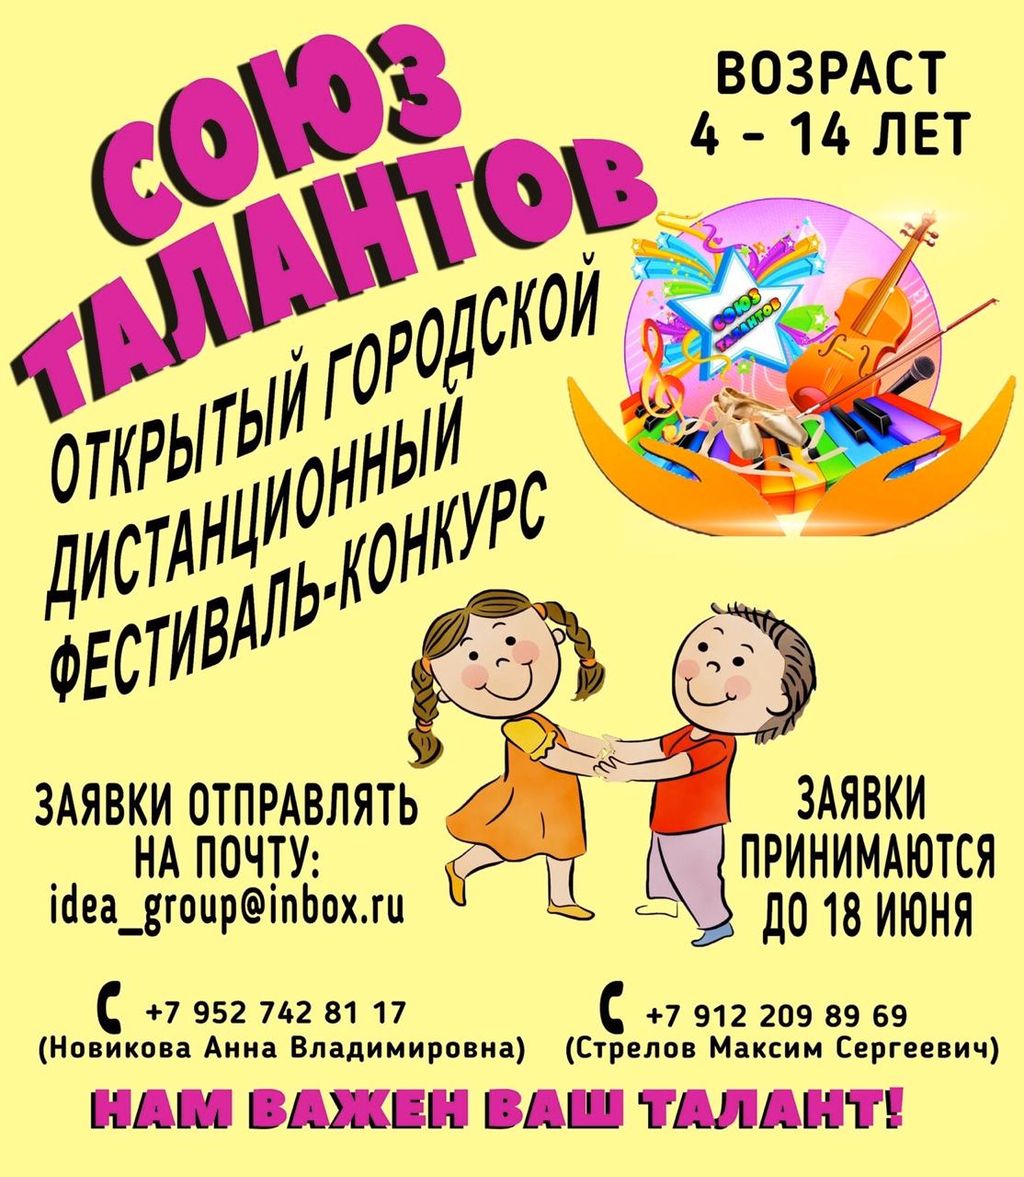 В Краснотурьинске пройдет детский конкурс-фестиваль "Союз талантов". Приглашают всех!